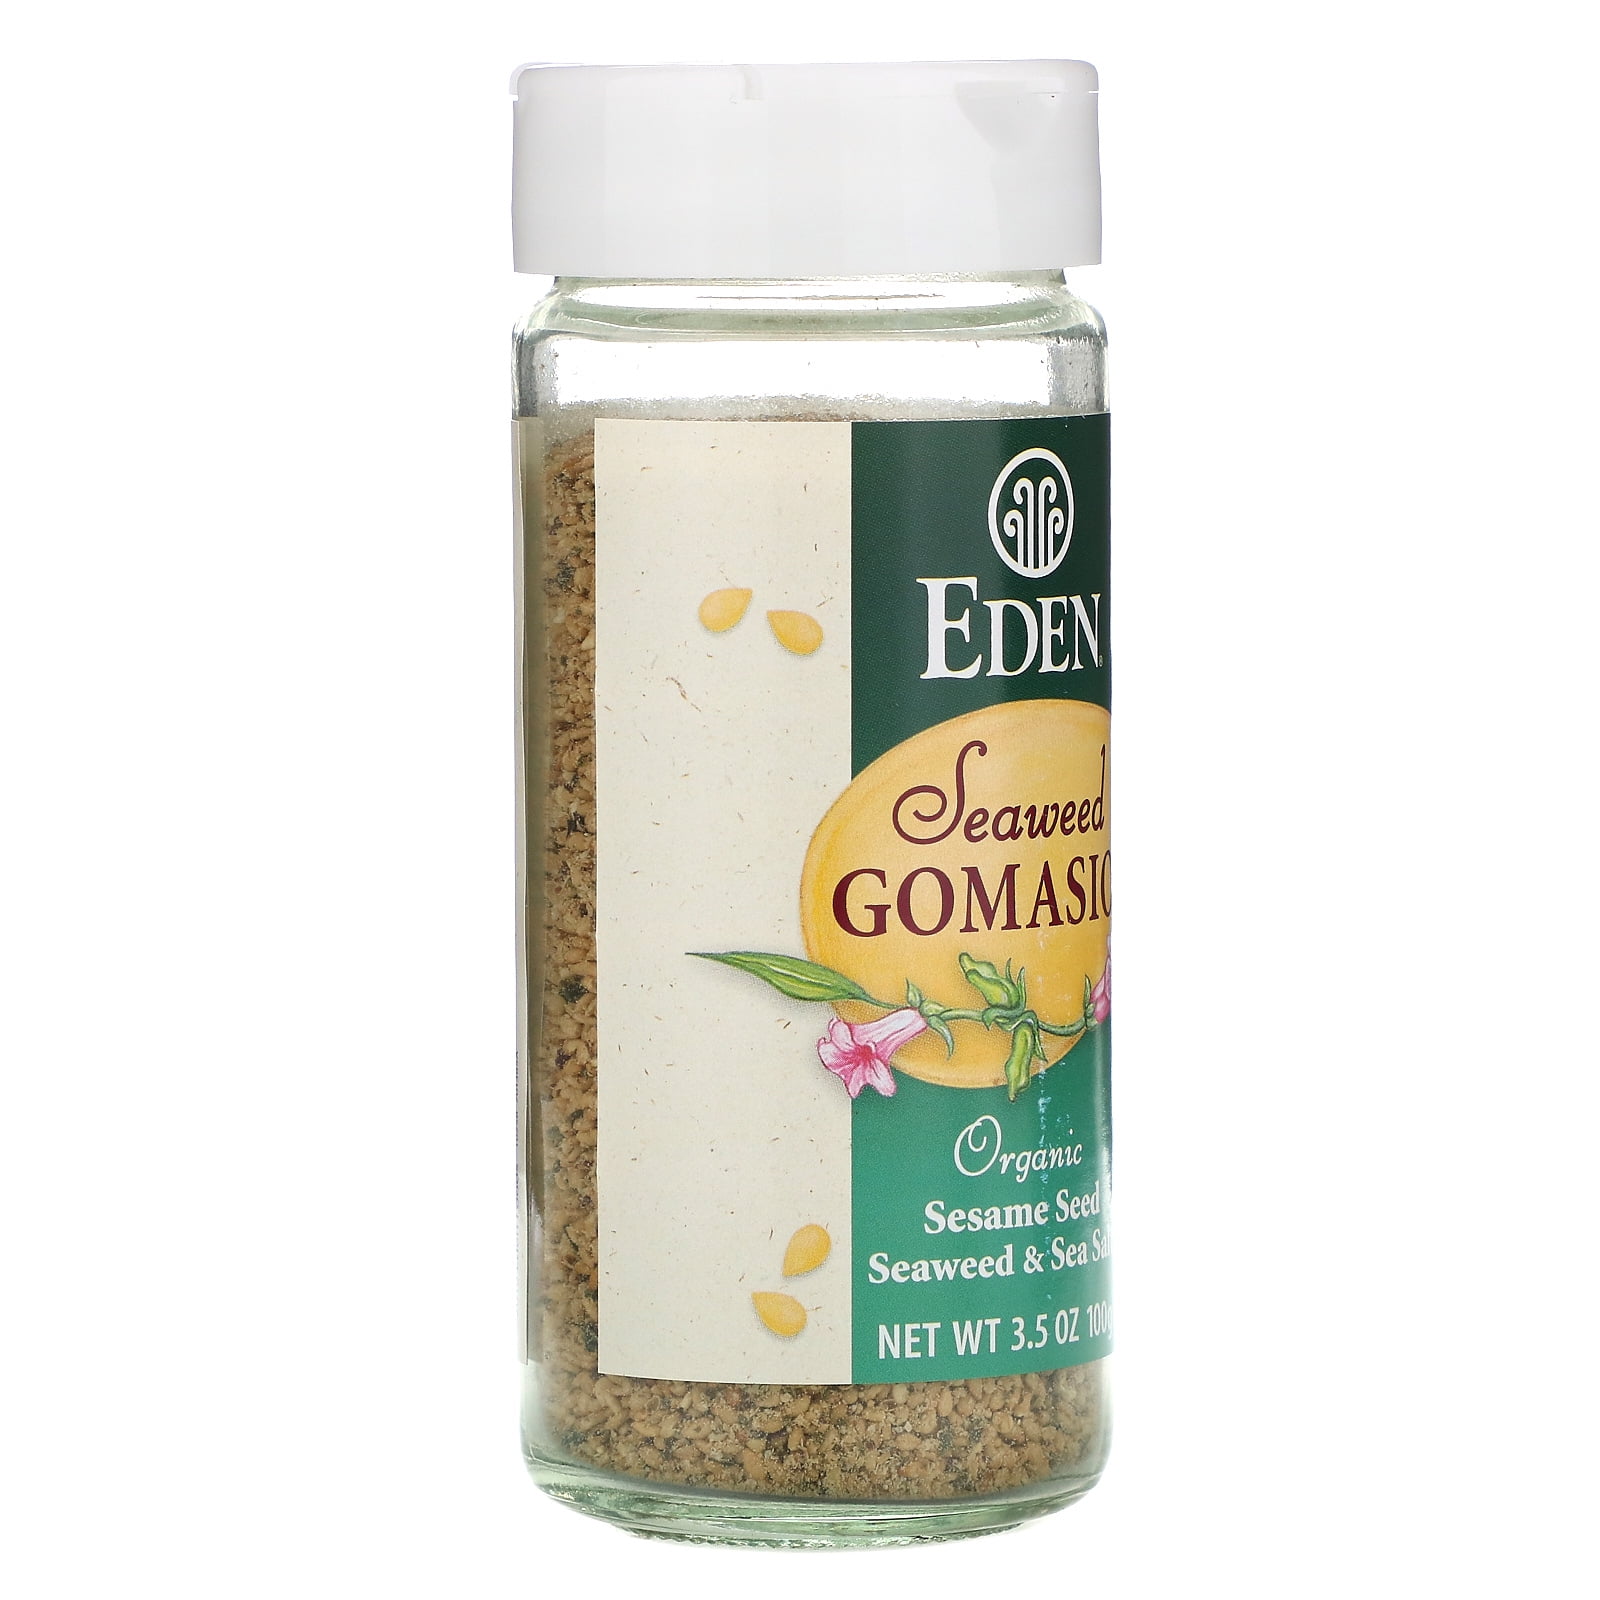 Eden Organic Seaweed Gomasio, 3.5 oz Galss Jar, Sesame Salt